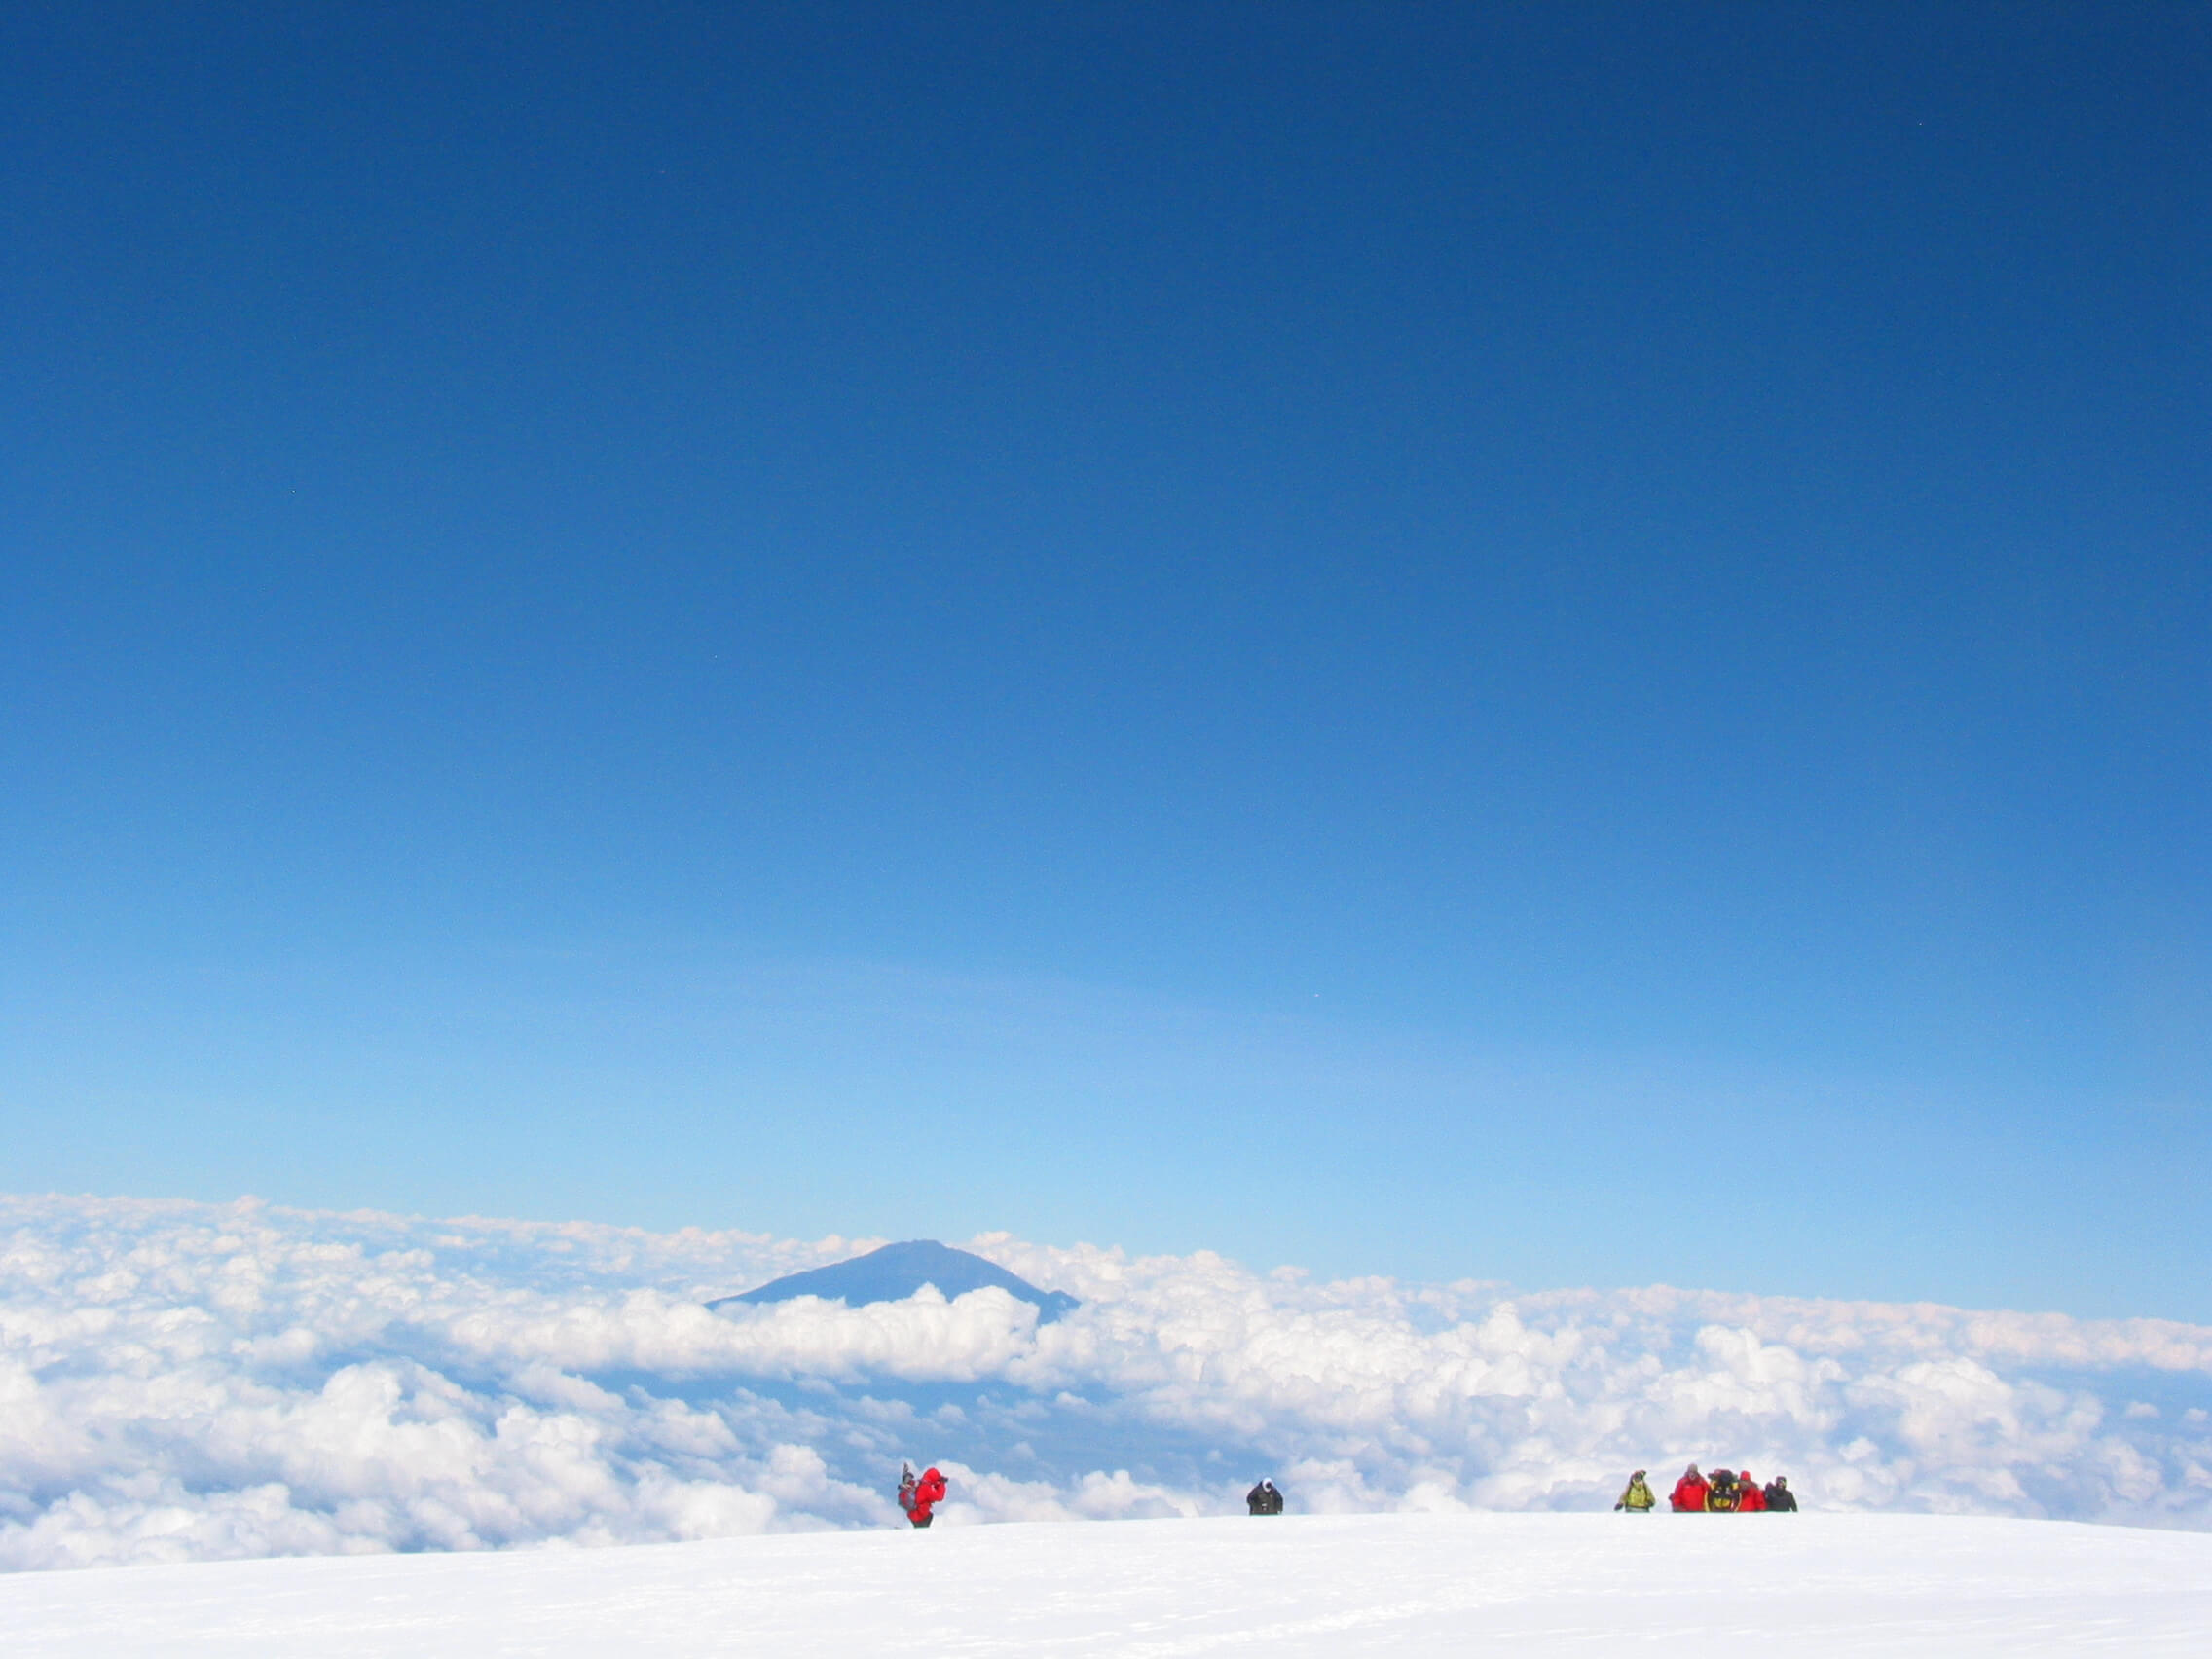 kilimanjaro trek season